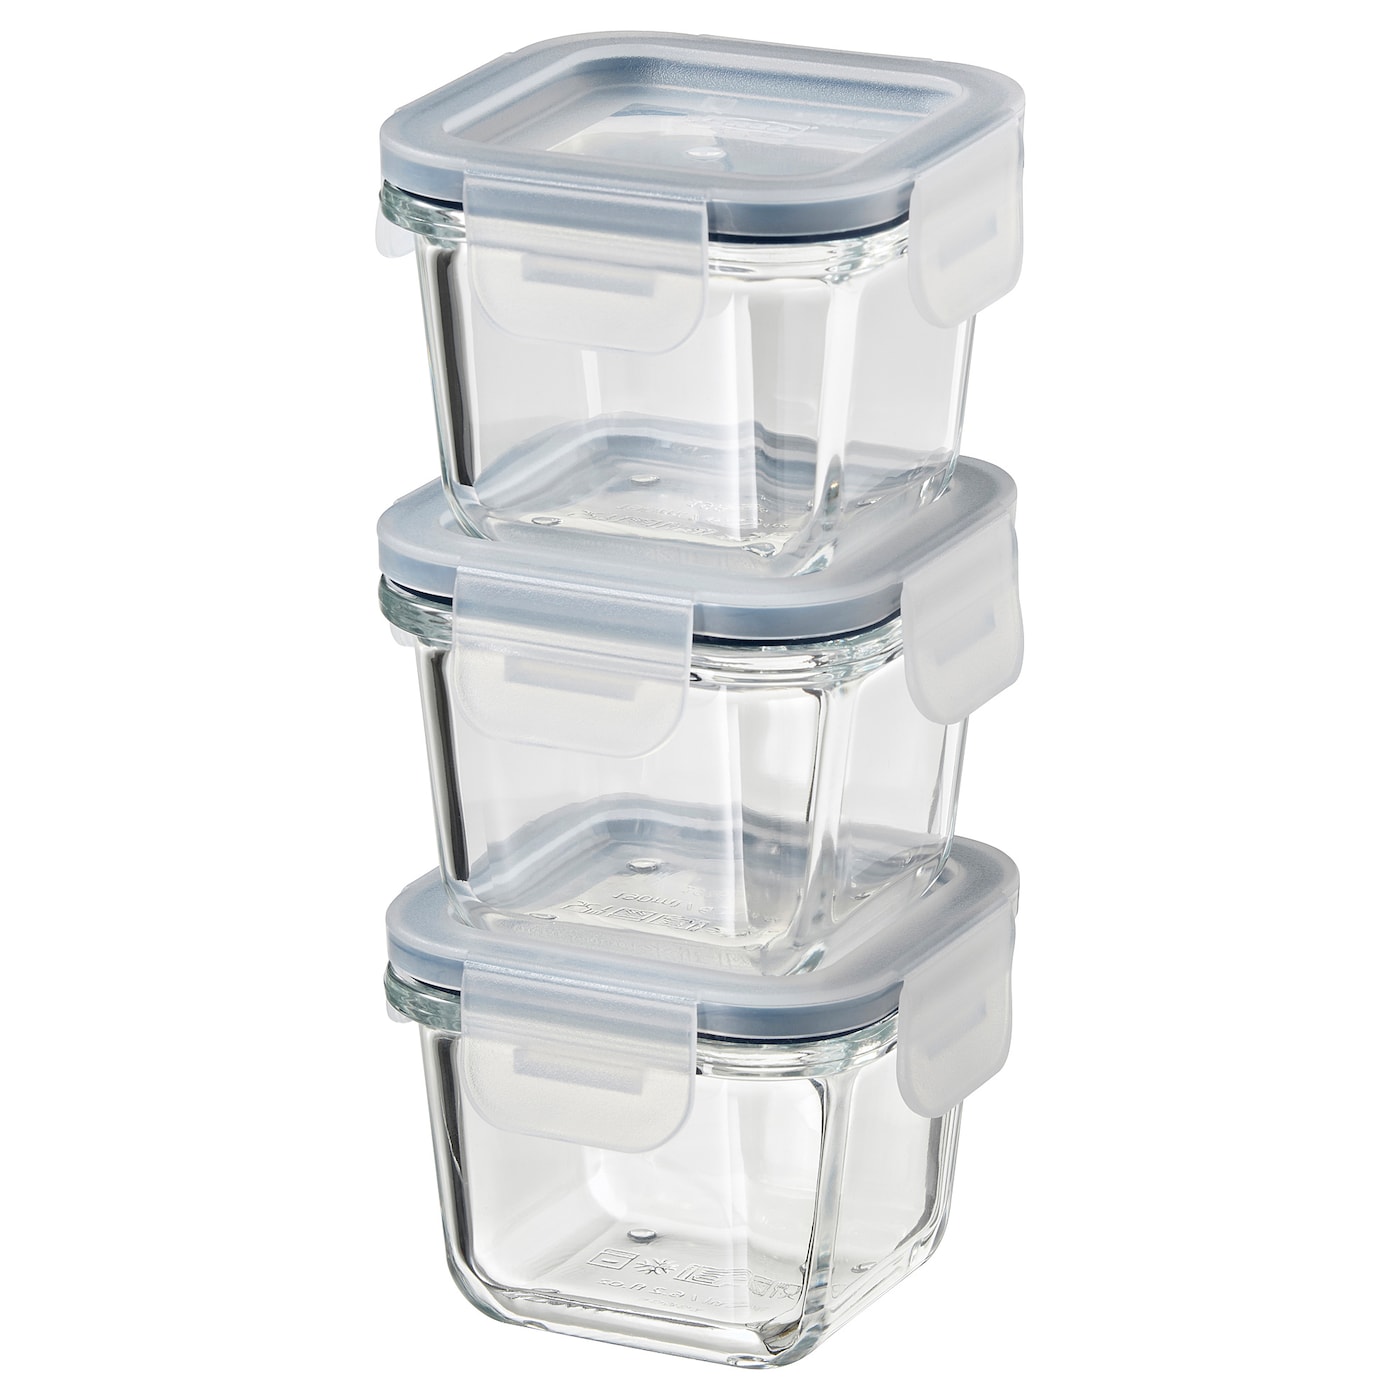 Набор контейнеров для продуктов с крышкой, 3 шт. - IKEA 365+, 8.5х8.5х6 см, стекло, ИКЕА 365+